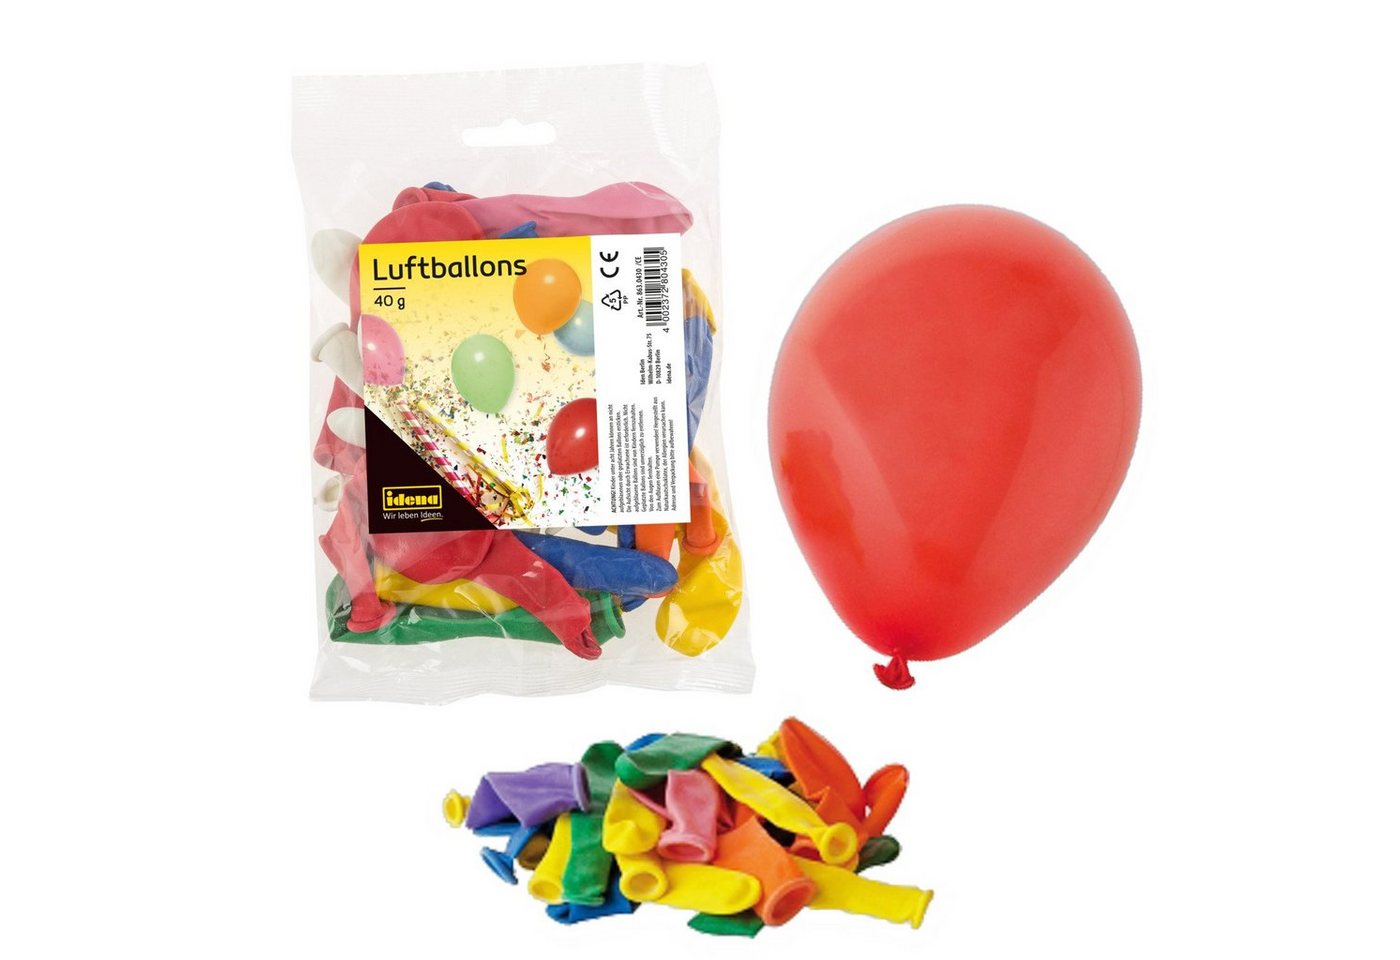 Idena Luftballon Idena 8630430 - Luftballons ca. 40 g, farbig gemischt, das fröhliche von Idena